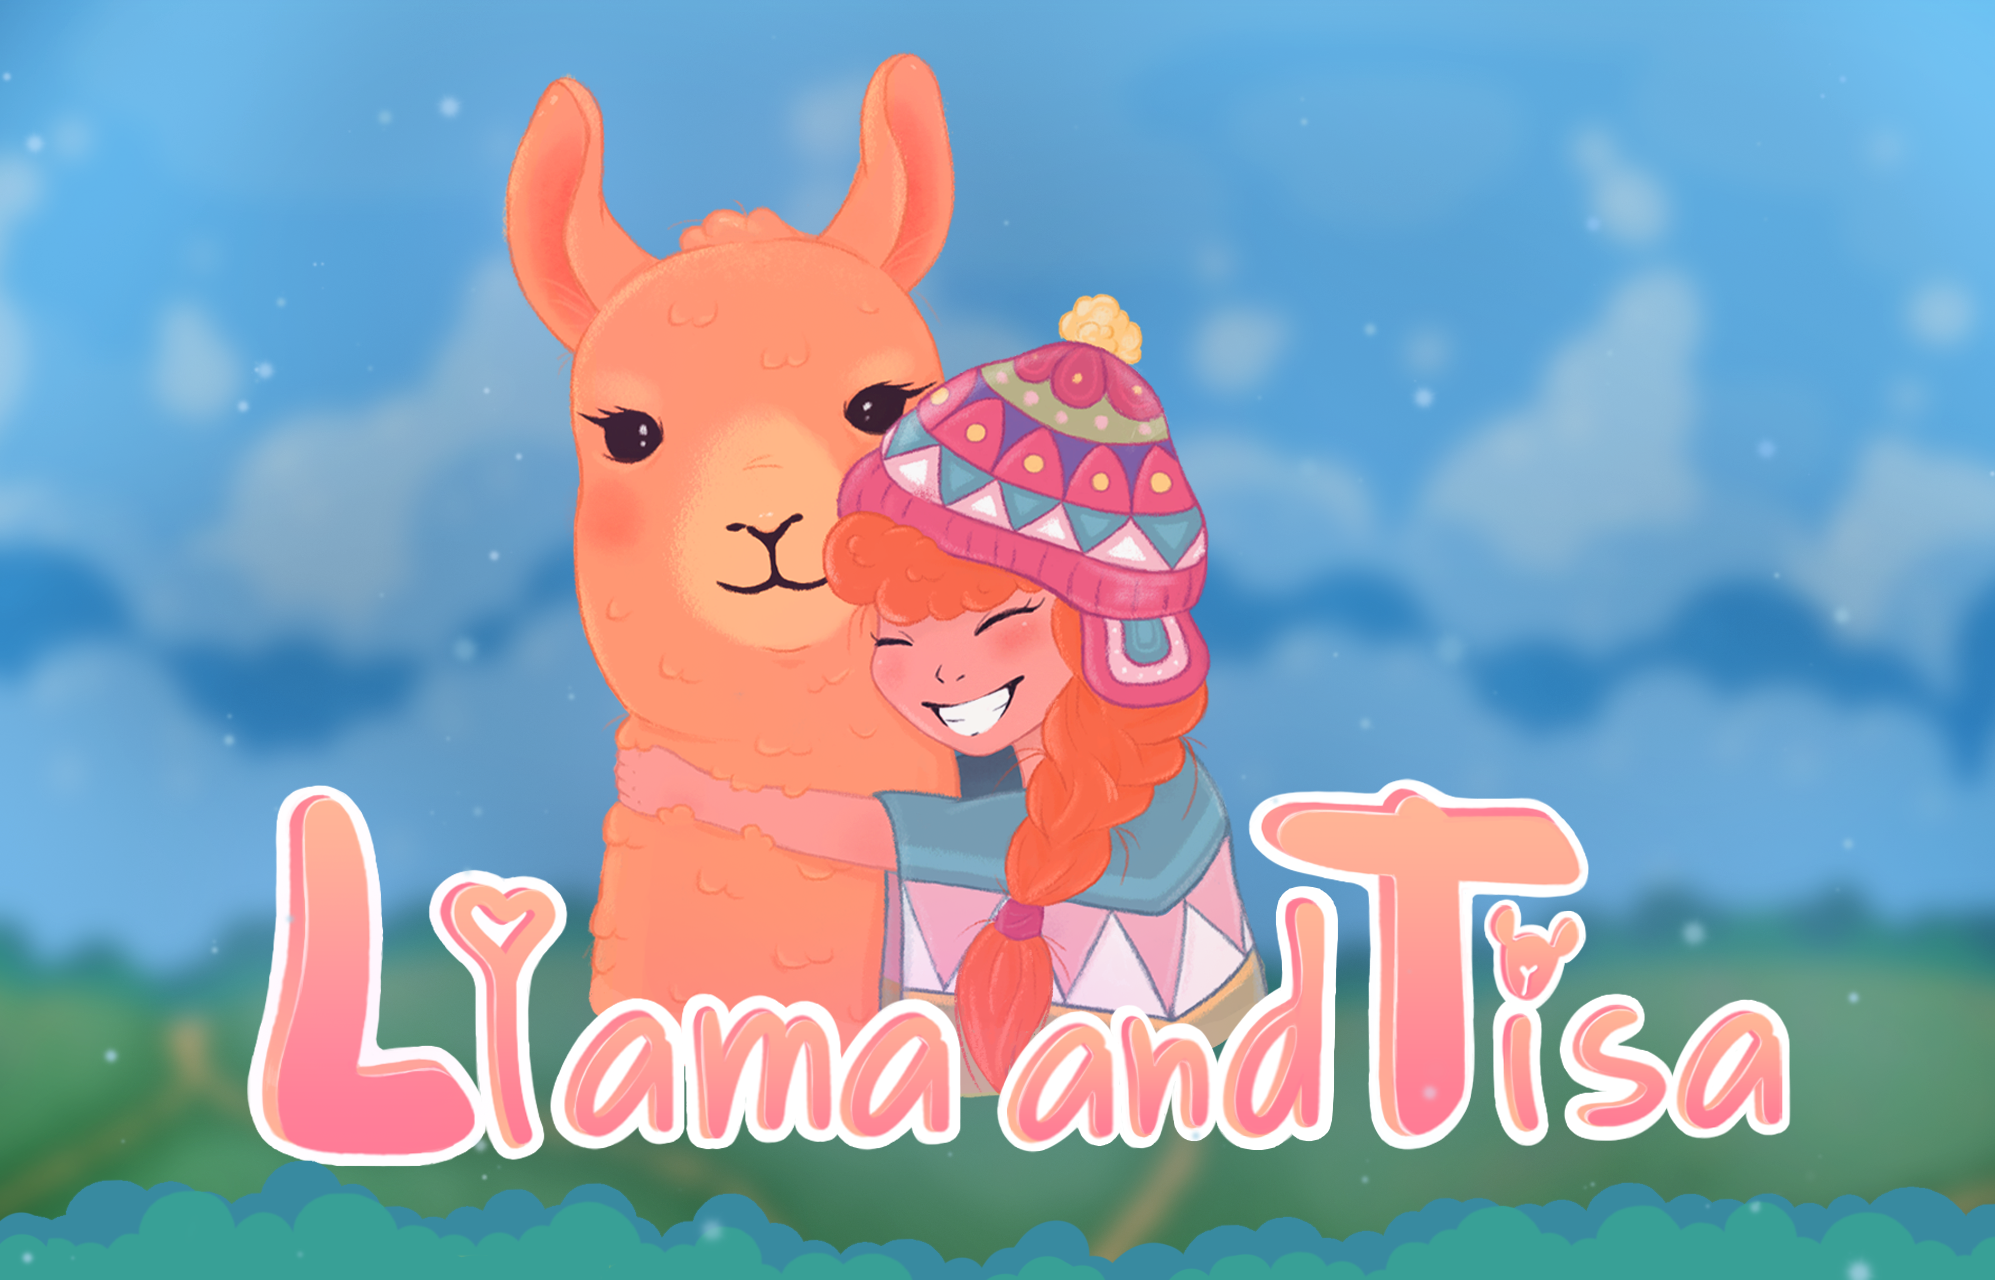 Llama and Tisa